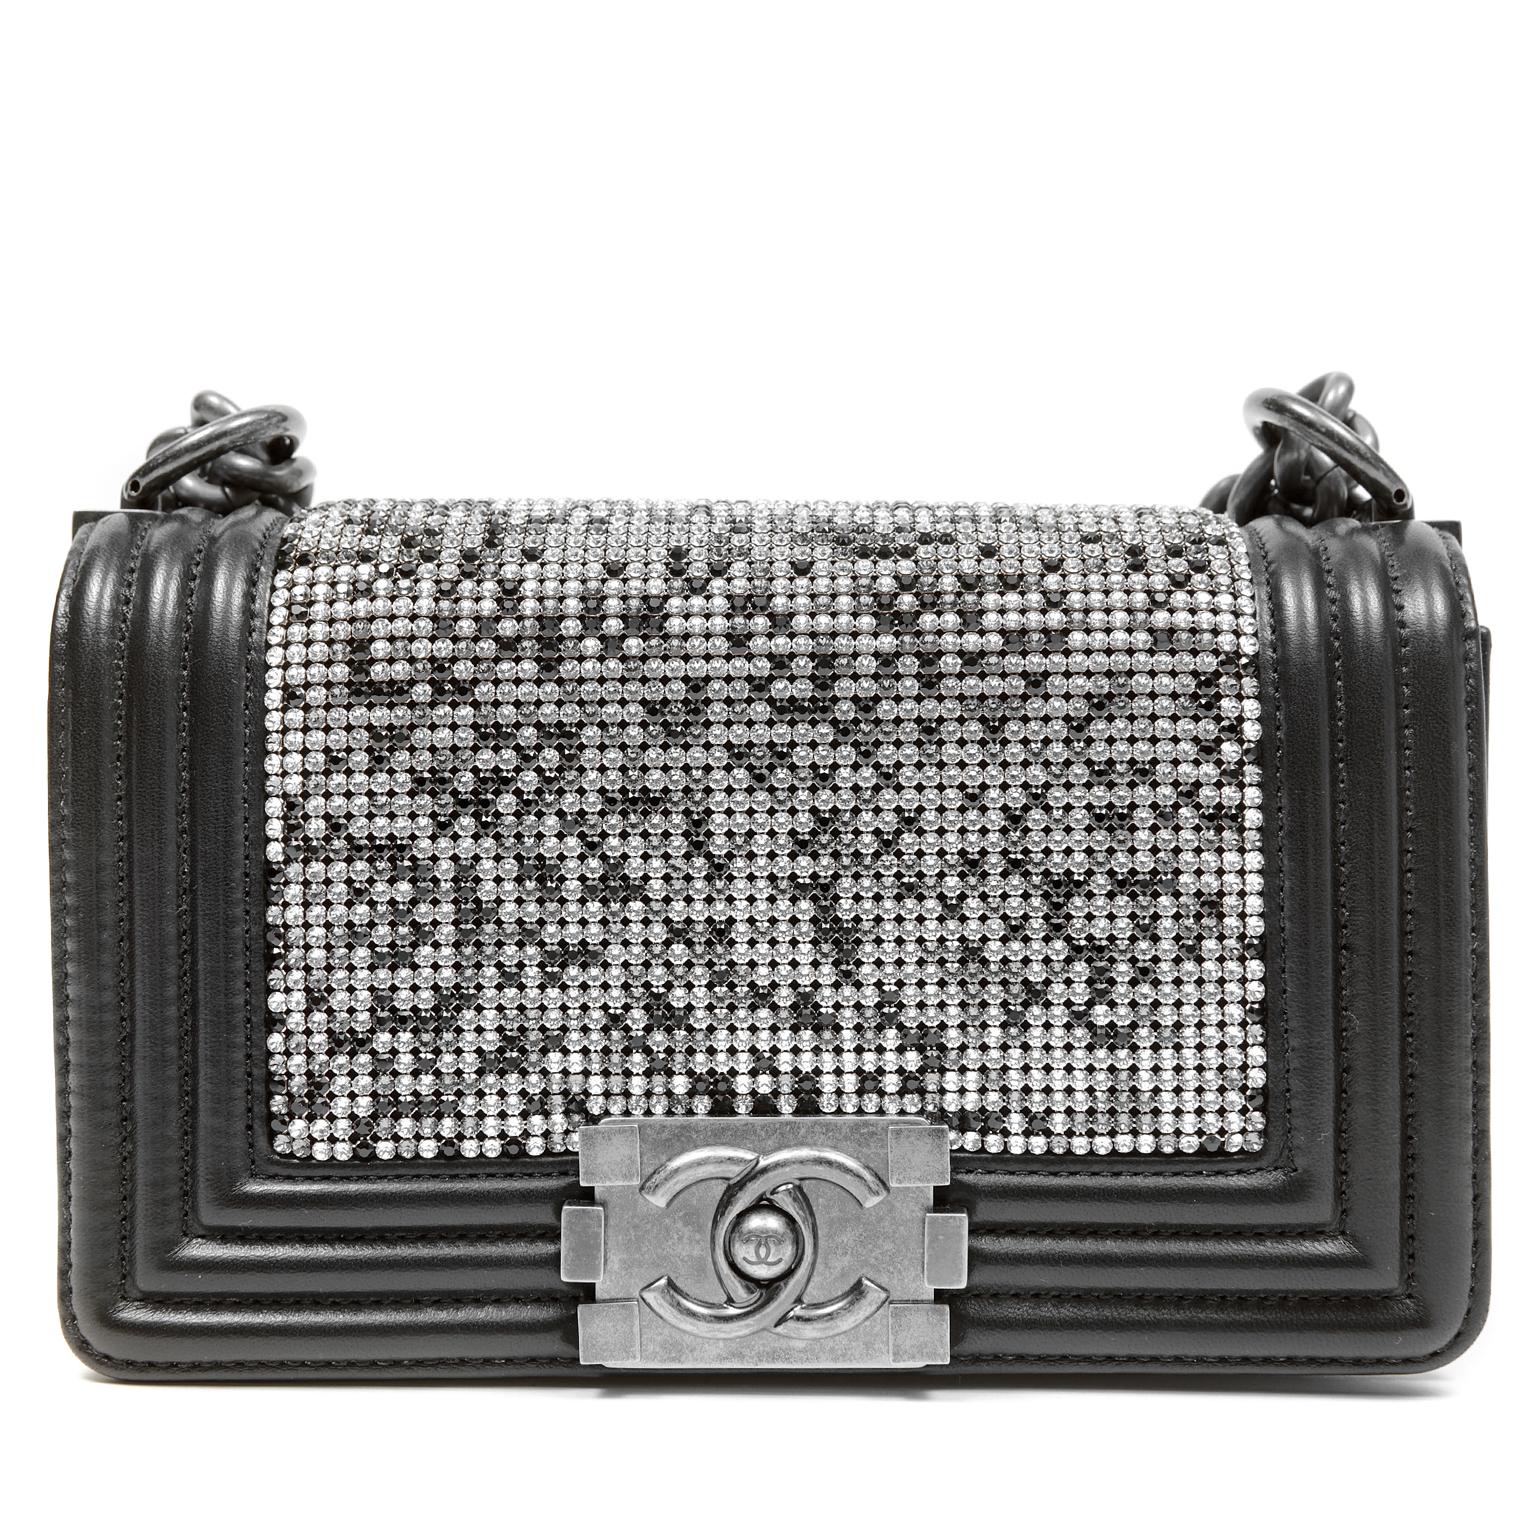 Chanel Swarovski Crystal Boy Bag- Black Leather with Ruthenium HW 2